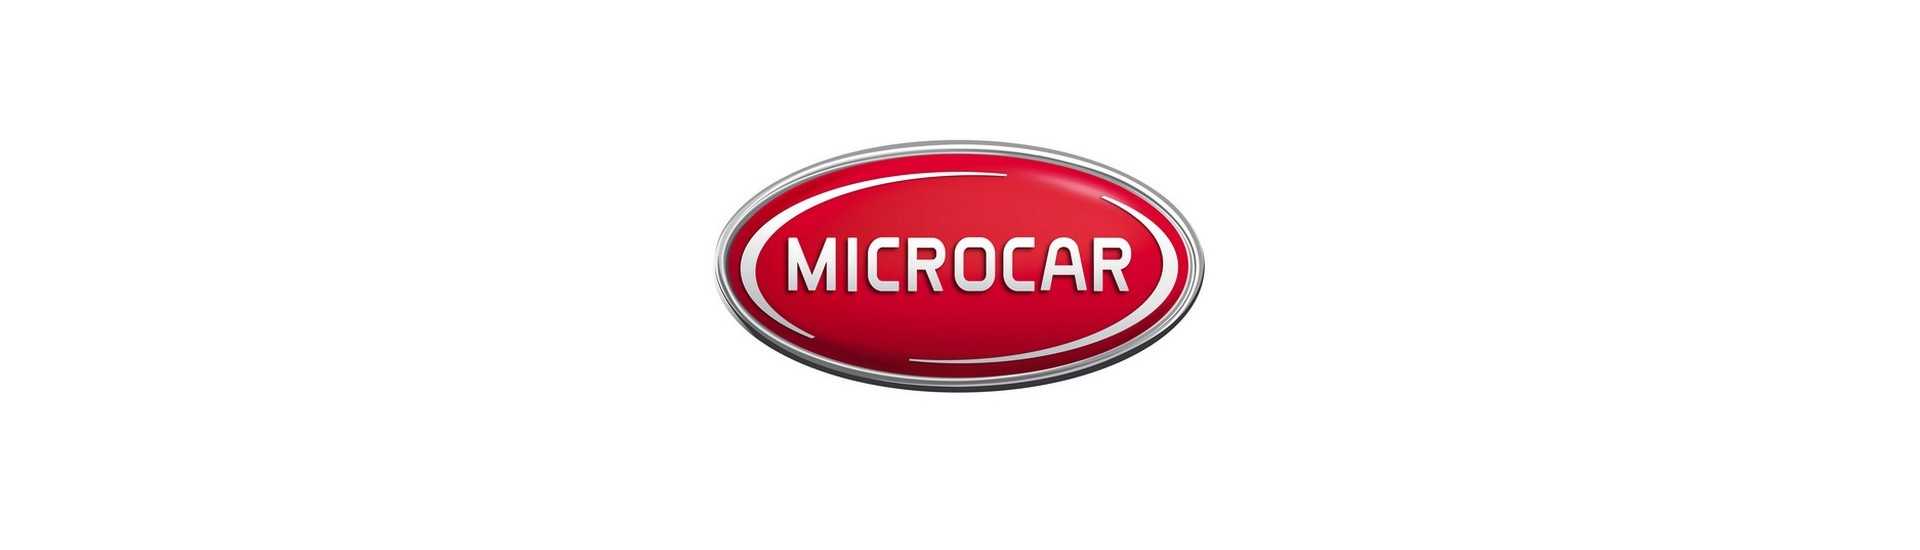 Luz y sintonía al mejor precio para coche sin permiso Microcar